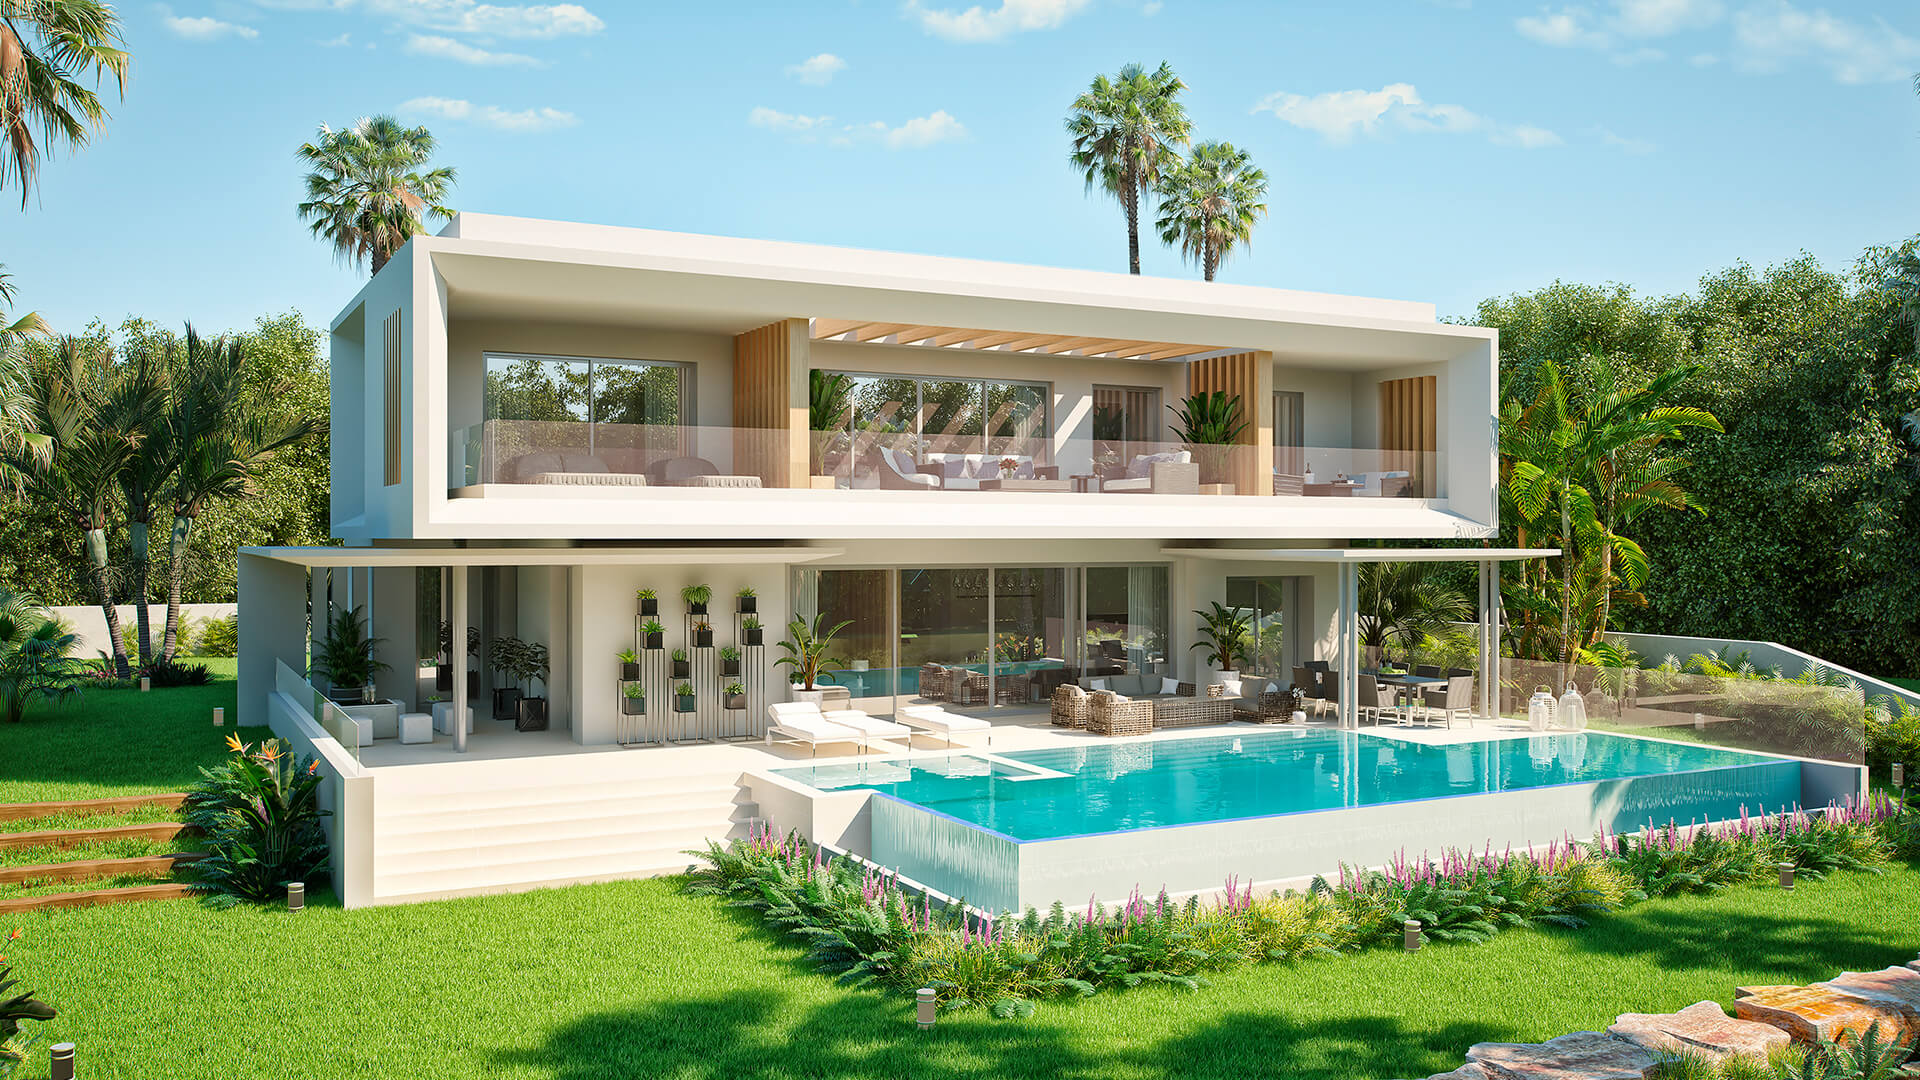 The Gallery - New Villas in Marbella